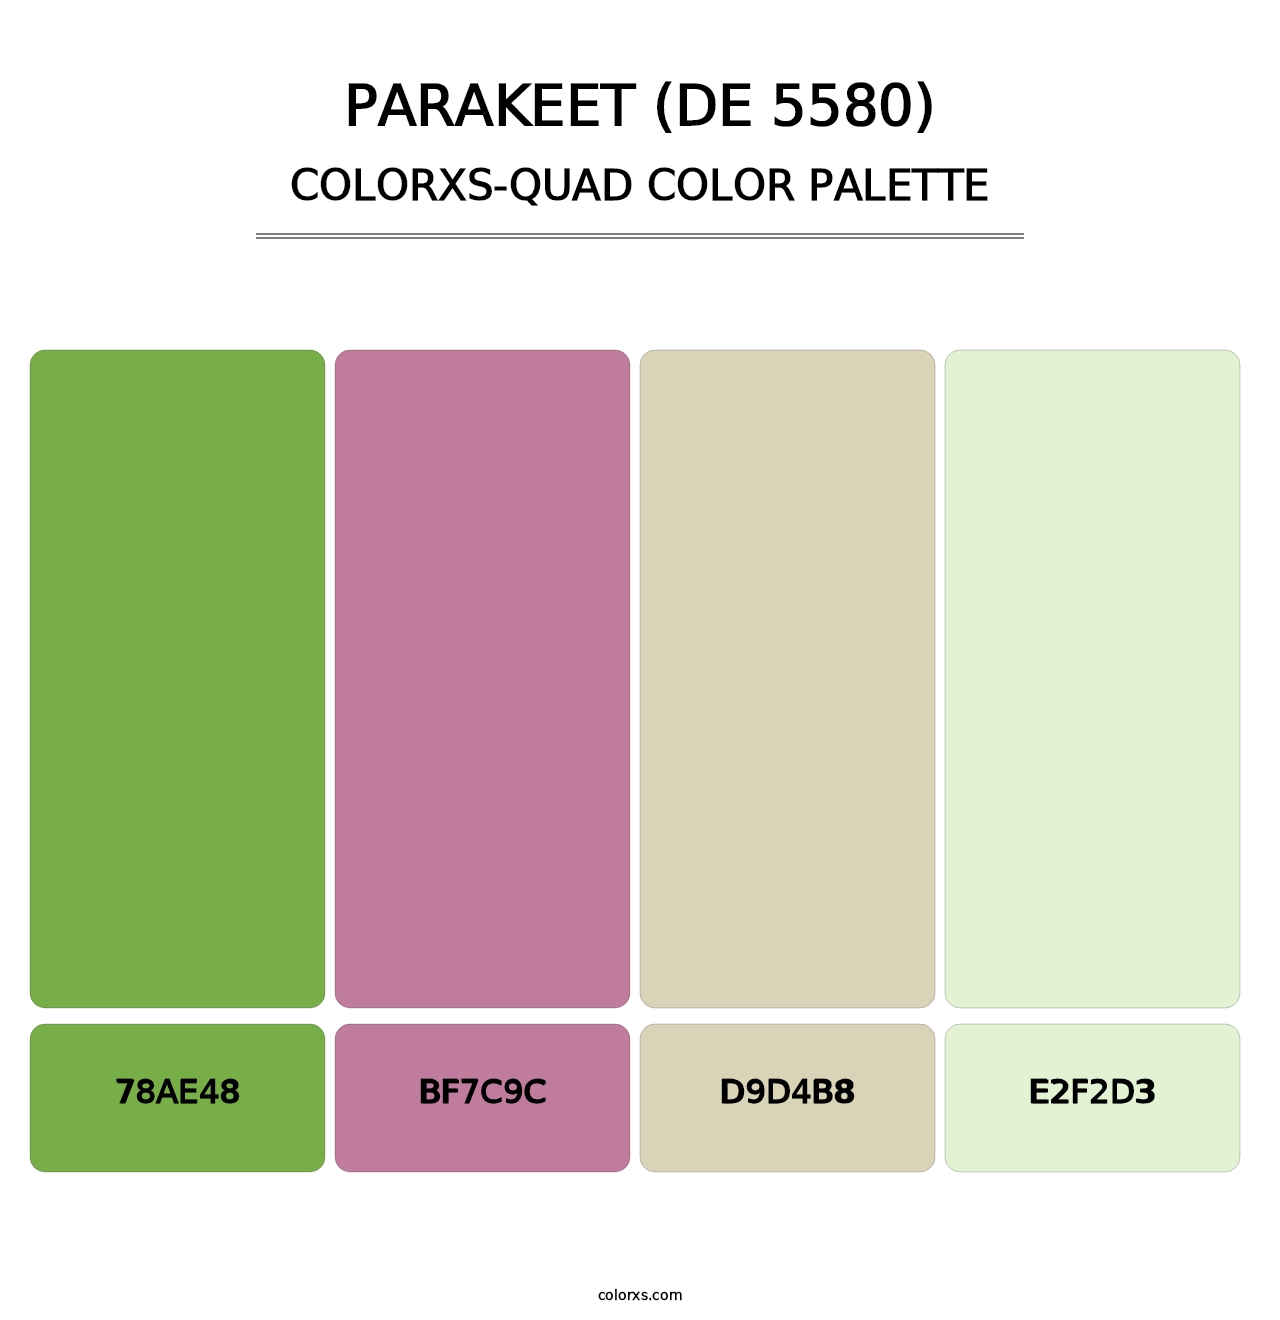 Parakeet (DE 5580) - Colorxs Quad Palette